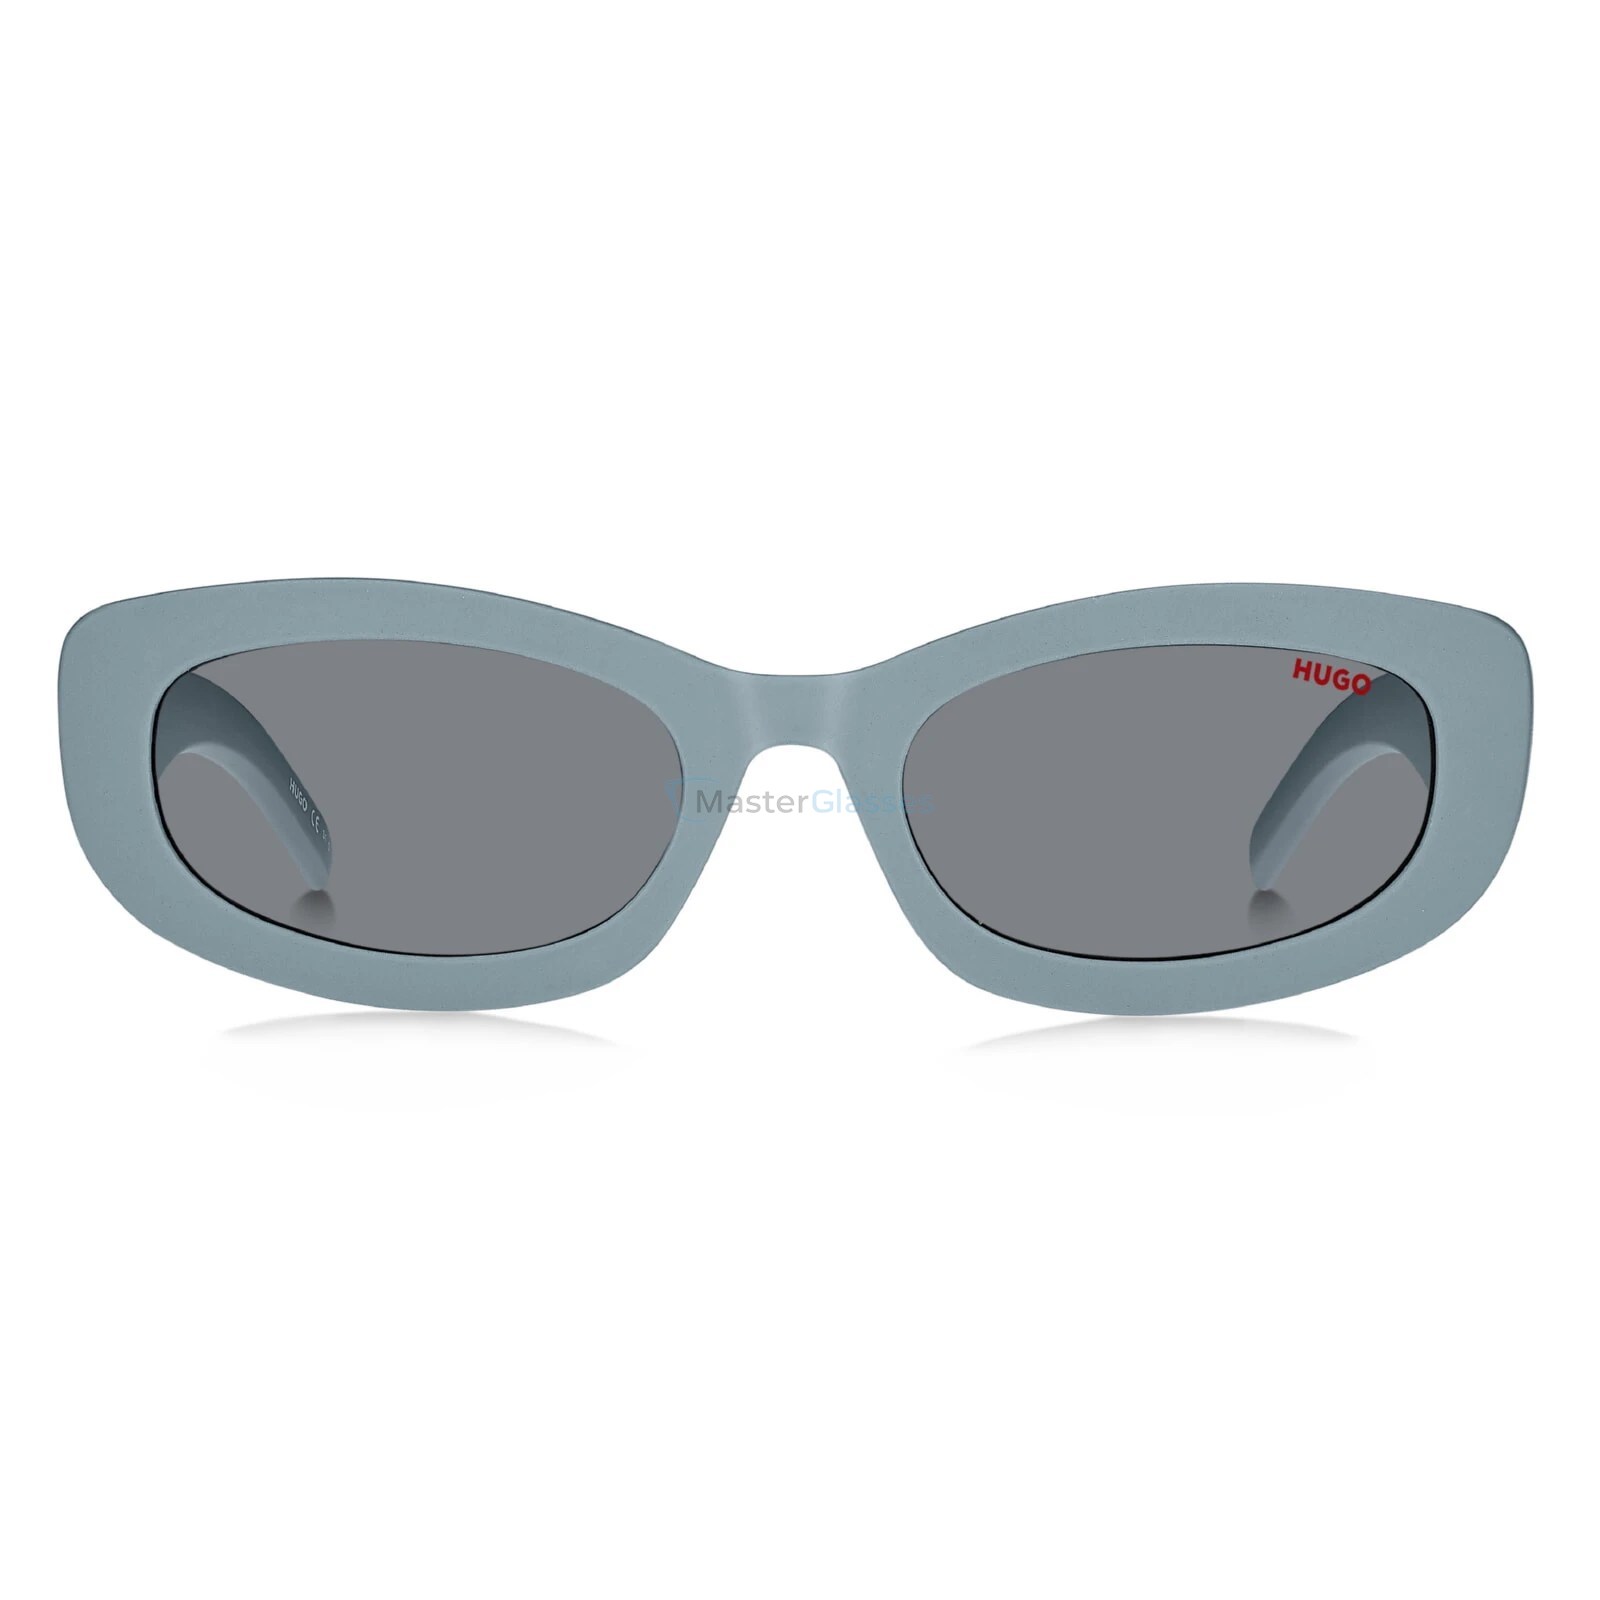 Очки hugo hg. Солнцезащитные очки Hugo HG 1252/S MVU ir. Armani Exchange очки голубые. Hugo HG 1252/S 807 Black.